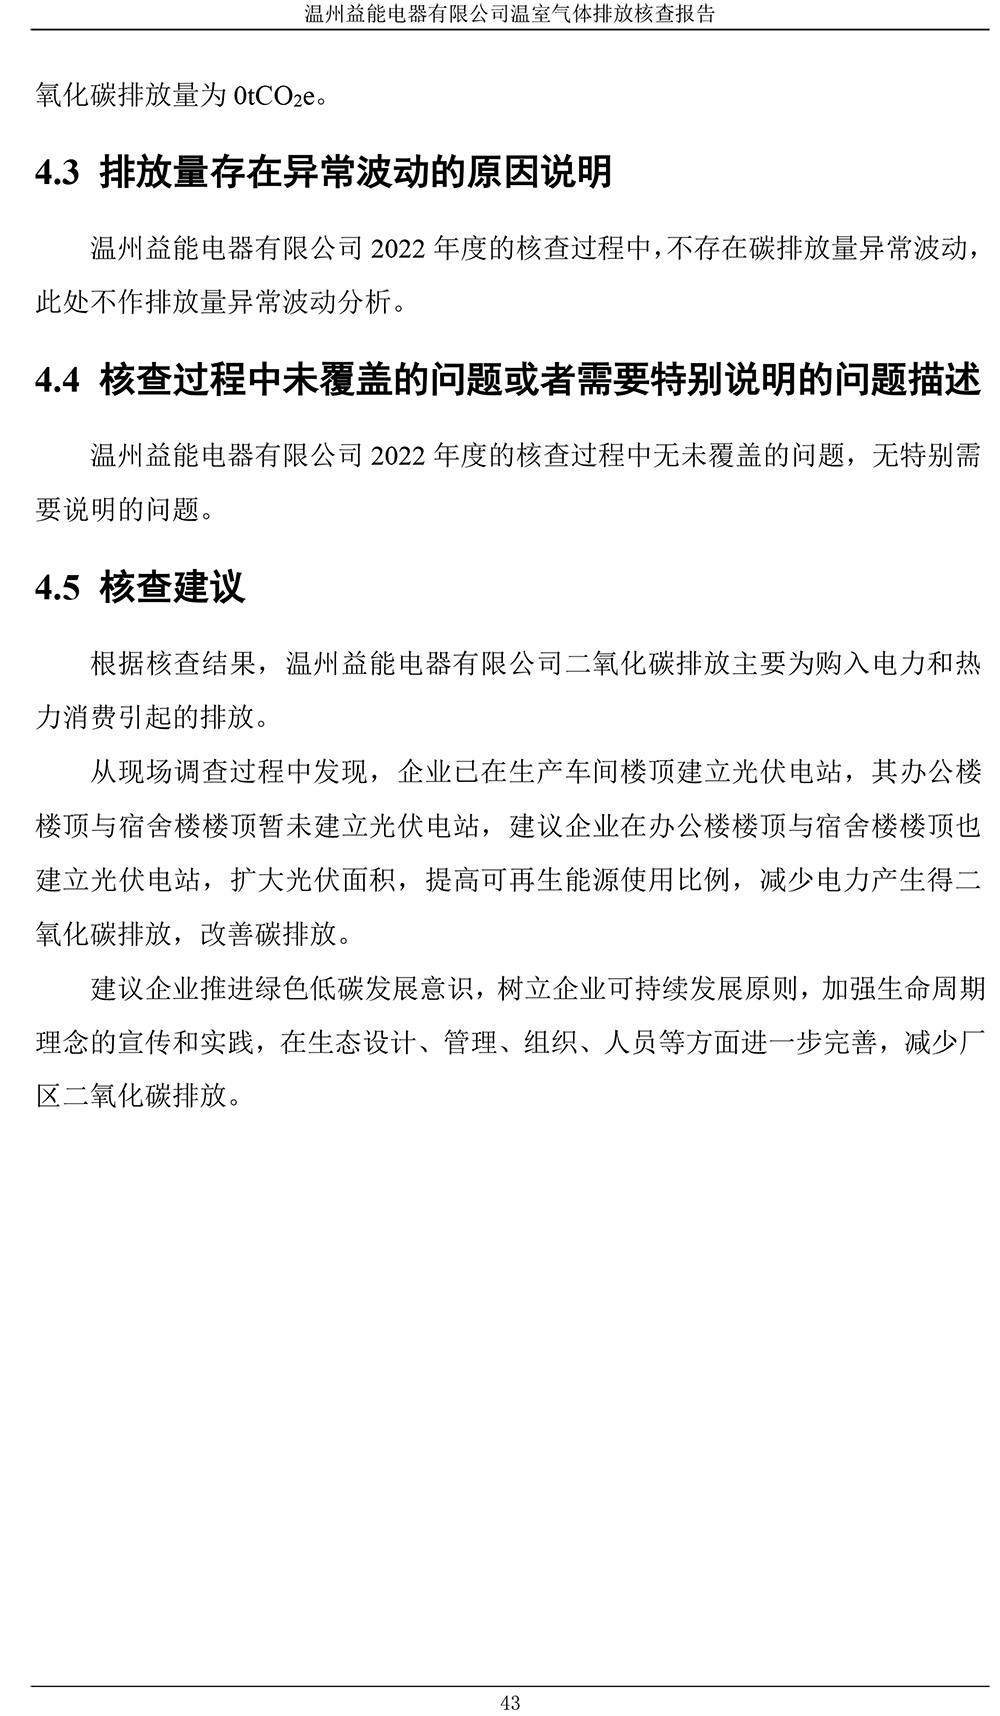 澳尼斯人娱乐官方网站(中国)有限公司官网温室气体排放核查报告-4.jpg